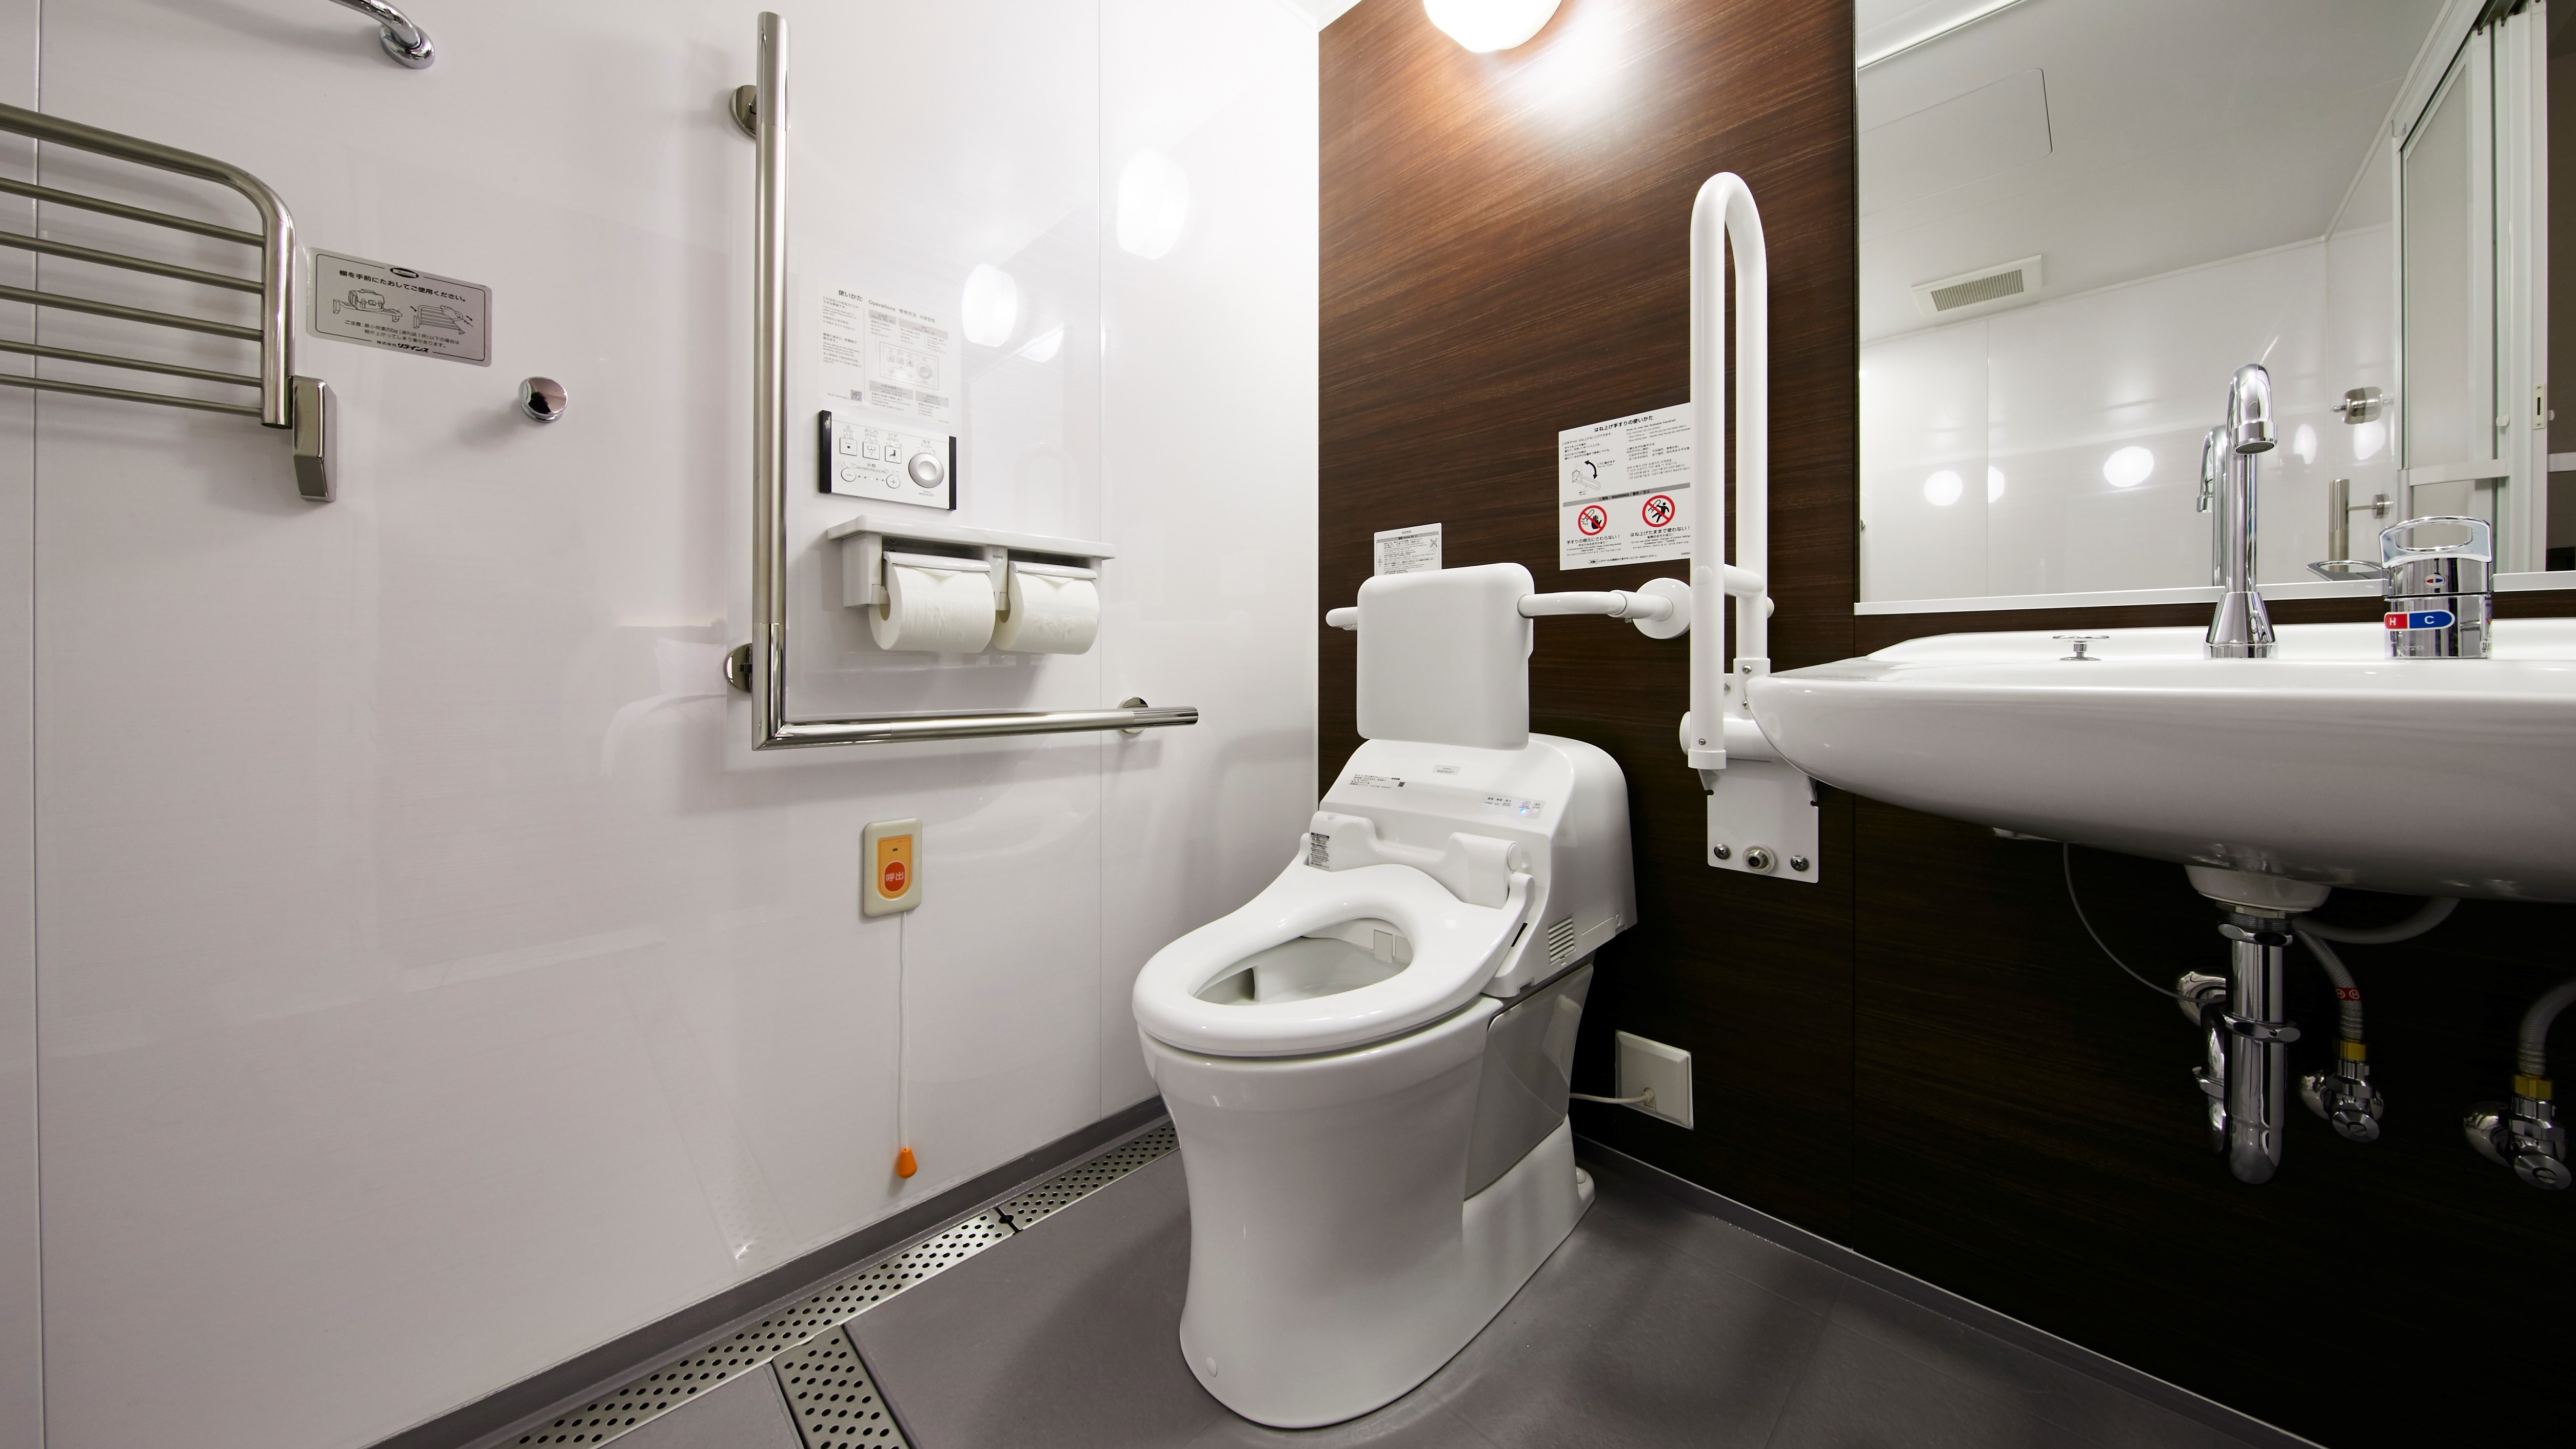 【ユニバーサルツイン】広めのトイレは手すりもあり、車椅子のままご利用いただけるバリアフリー仕様